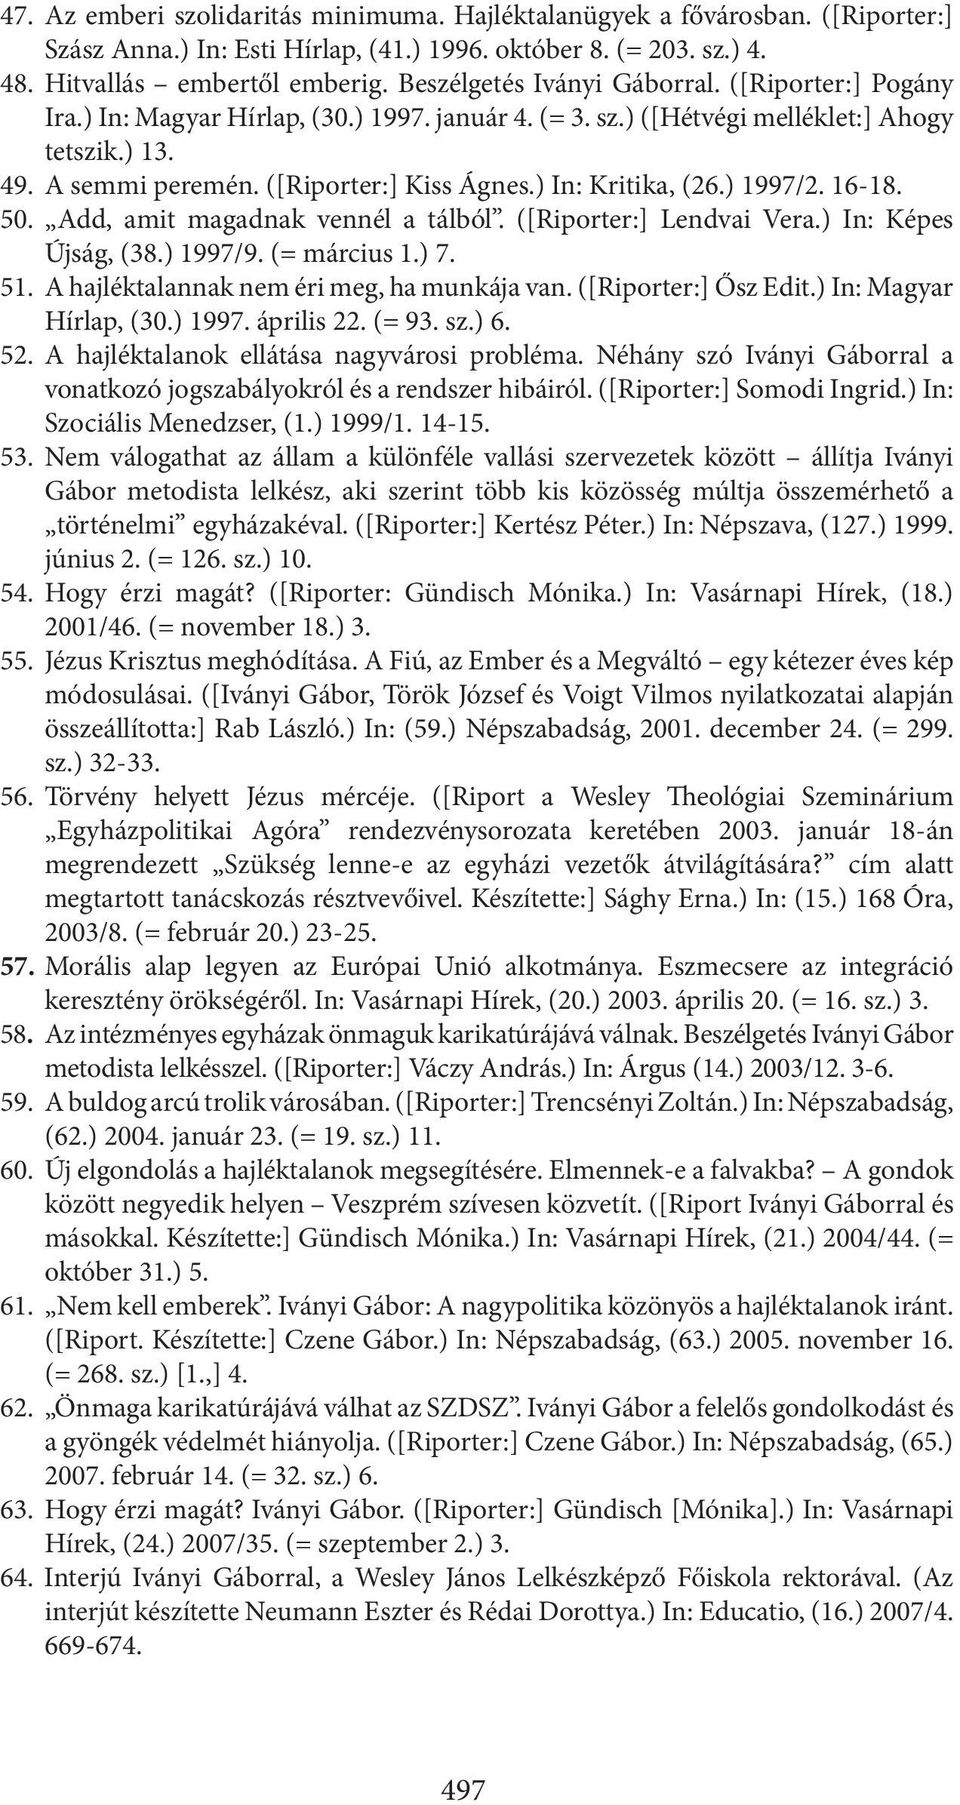 ) In: Kritika, (26.) 1997/2. 16-18. 50. Add, amit magadnak vennél a tálból. ([Riporter:] Lendvai Vera.) In: Képes Újság, (38.) 1997/9. (= március 1.) 7. 51.